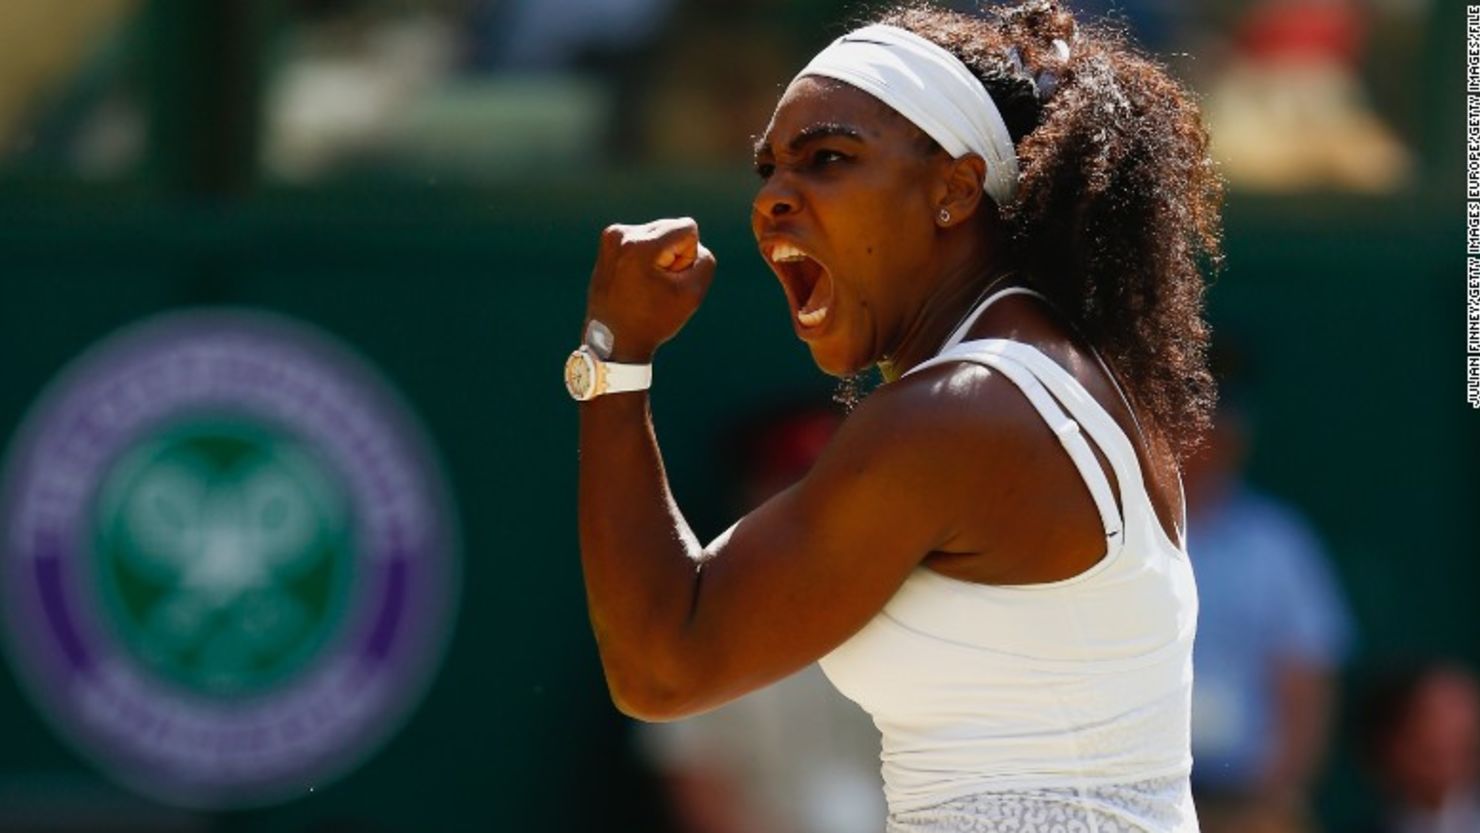 El 2015 fue un buen año para Serena Williams: la tenista alcanzó tres títulos de Gran Slam.